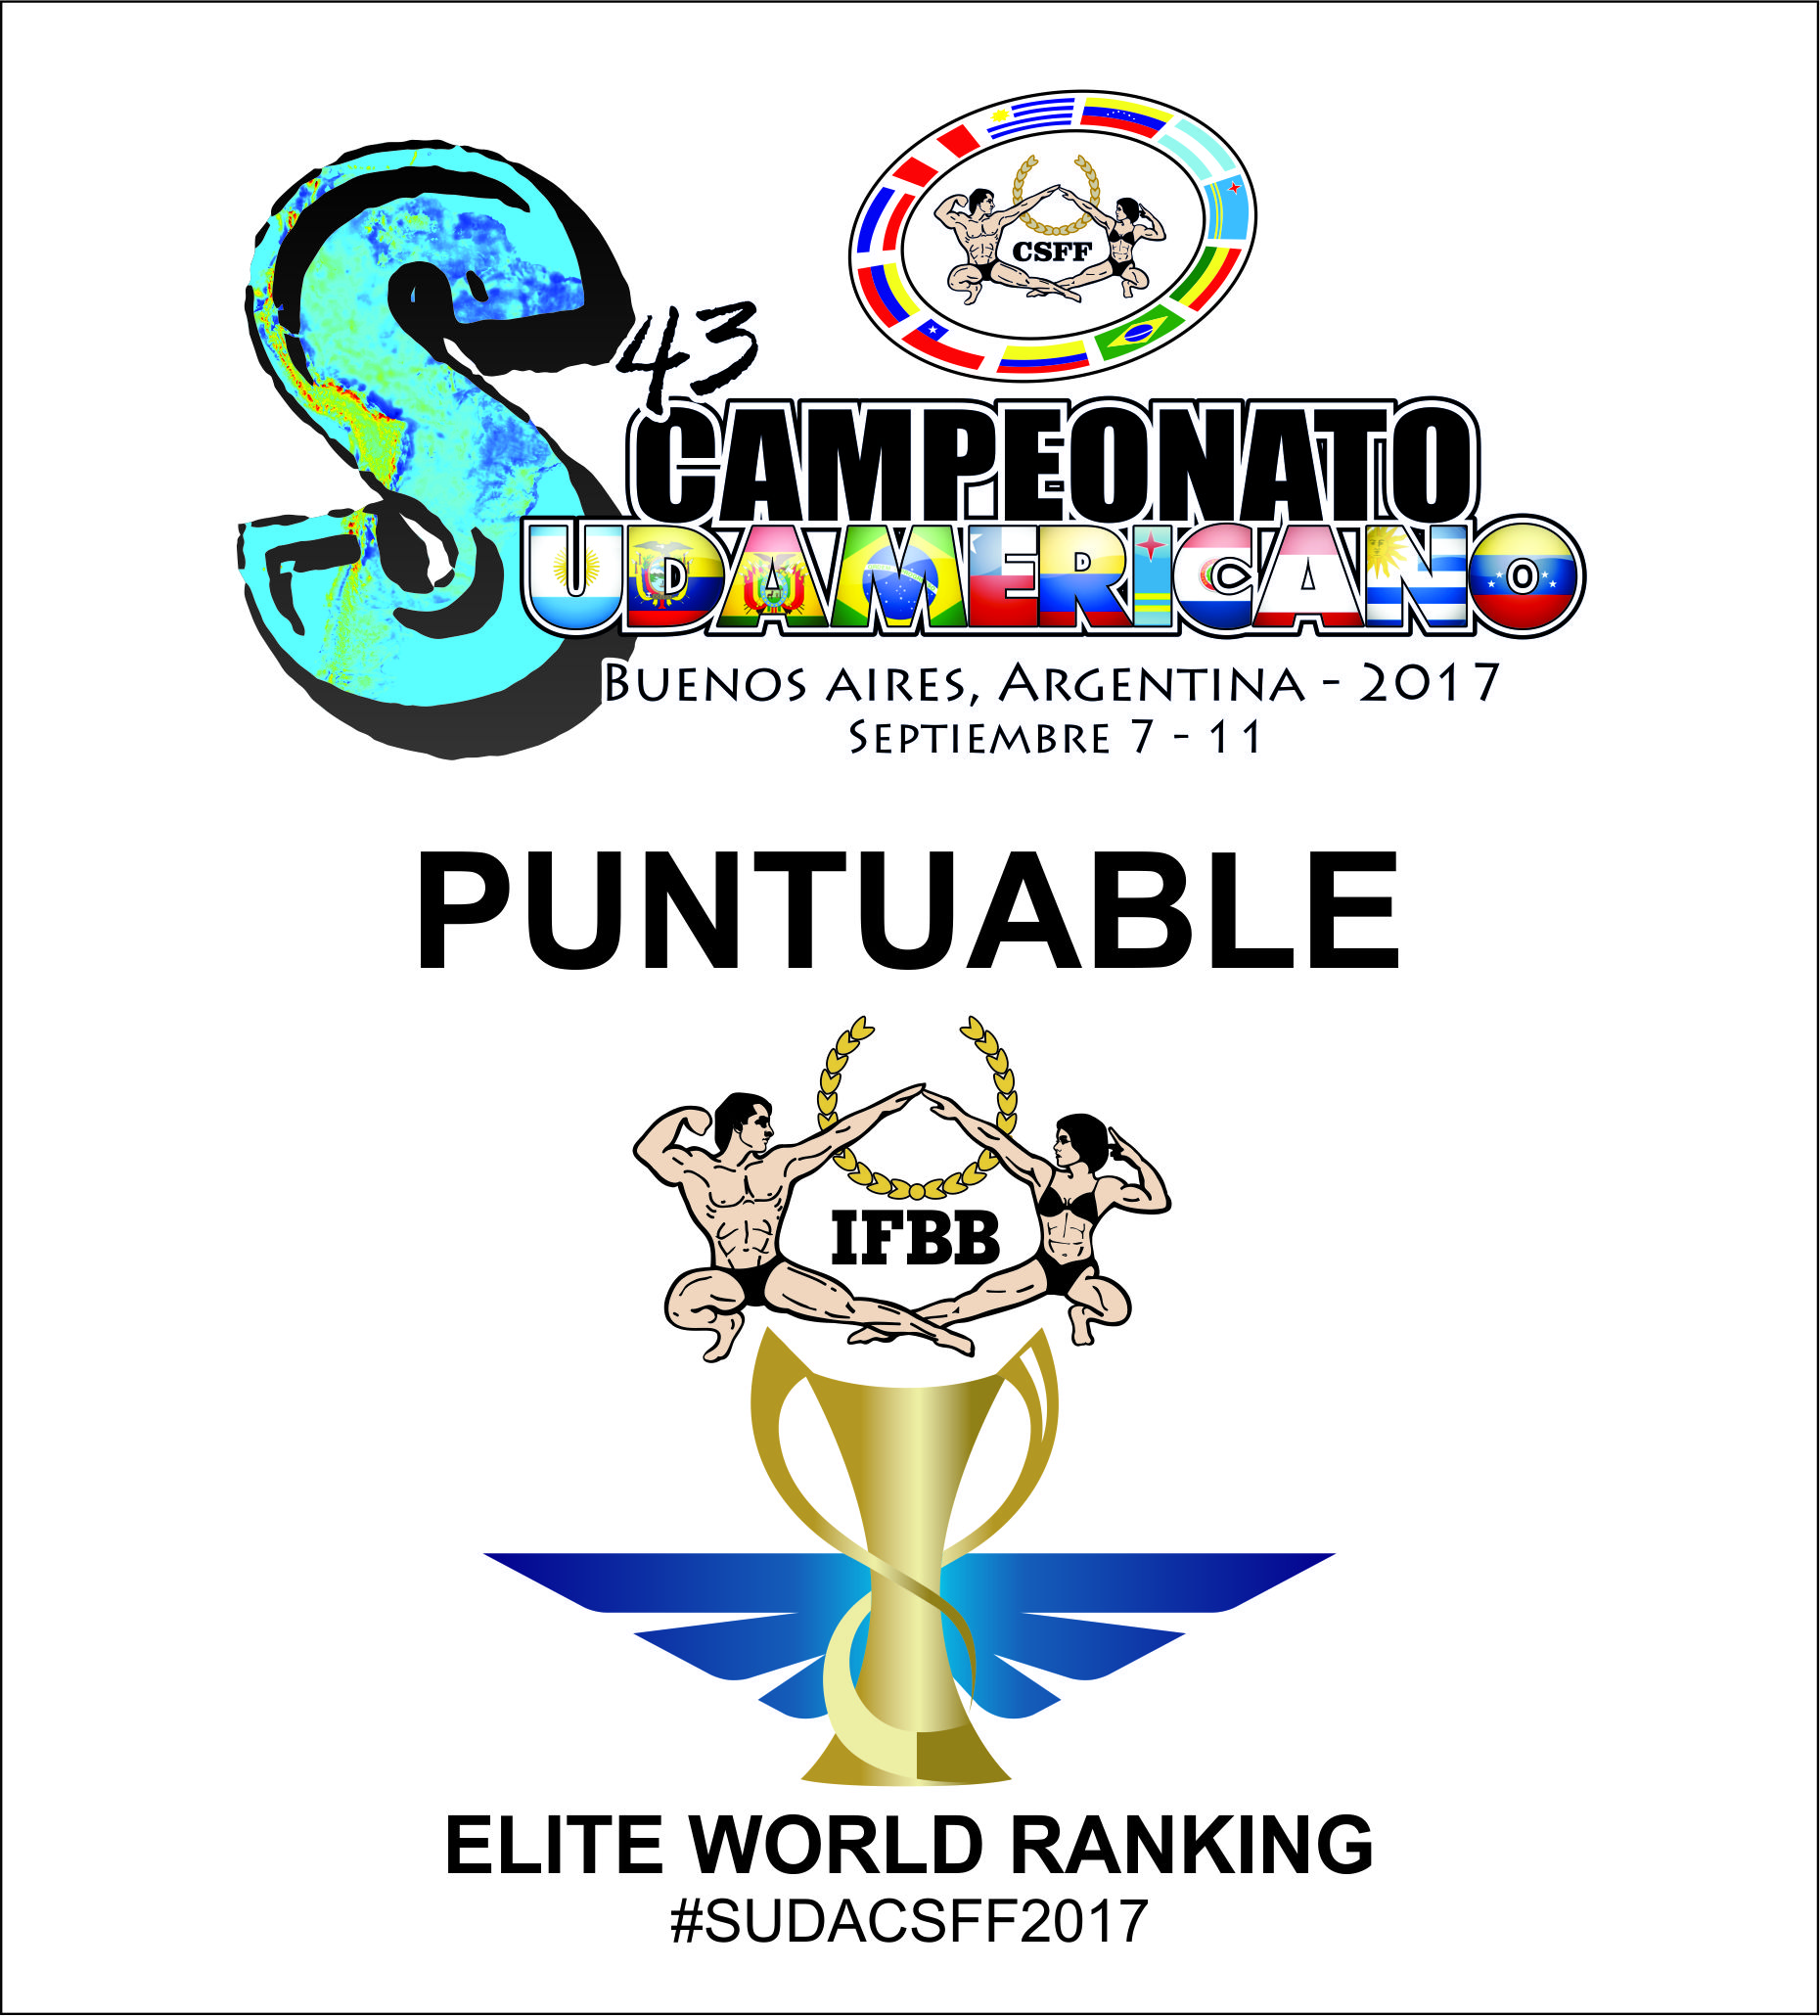 El Campeonato Sudamericano 2017 es puntuable en el Ranking Mundial Elite